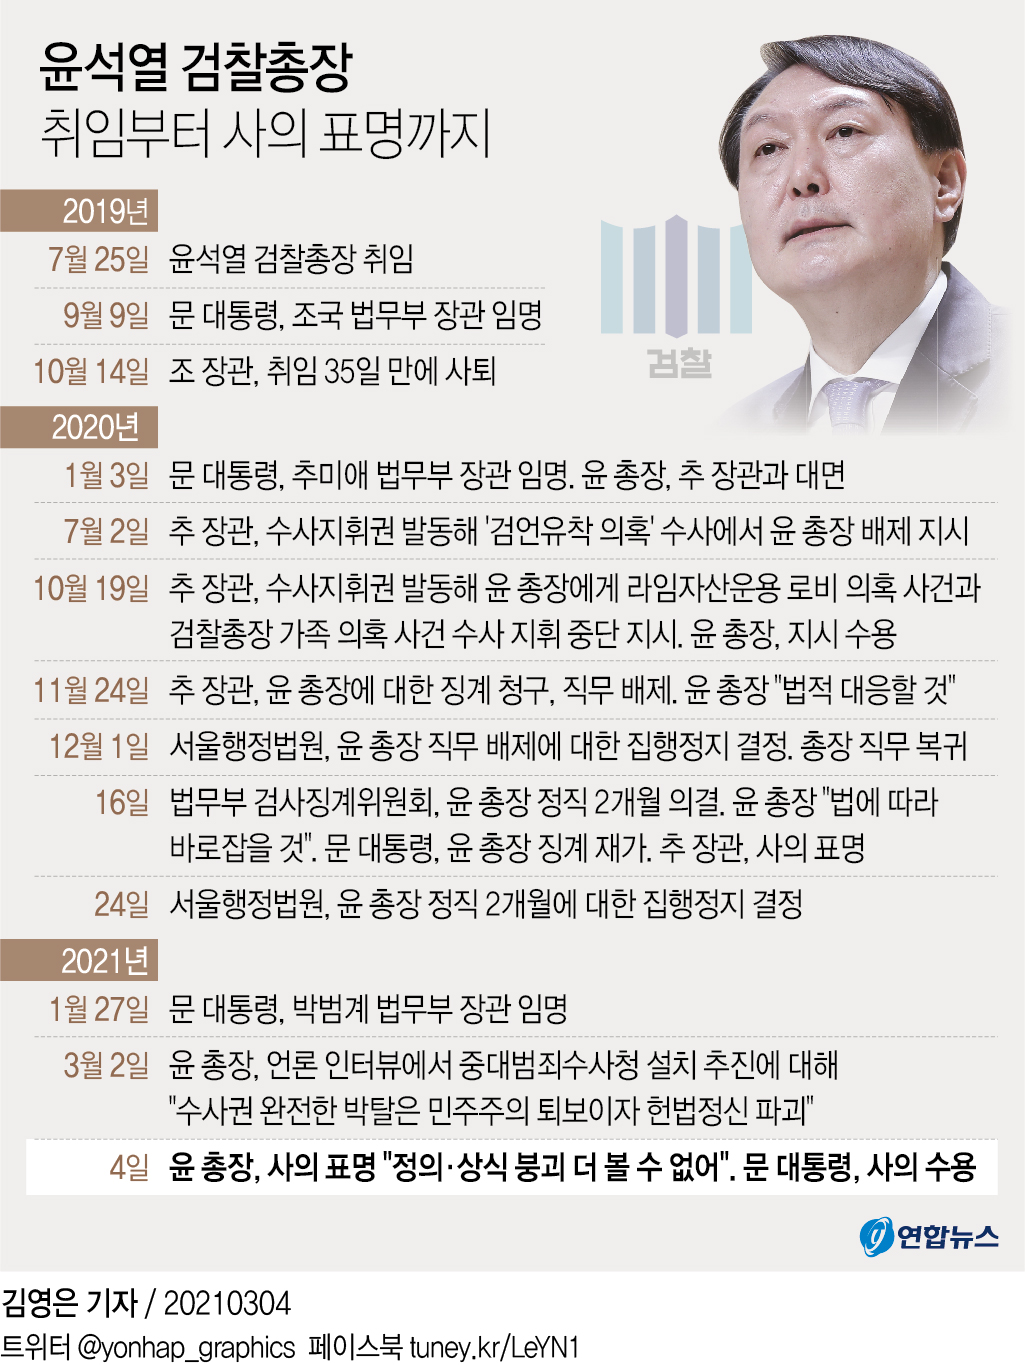 [그래픽] 윤석열 검찰총장 취임부터 사의 표명까지